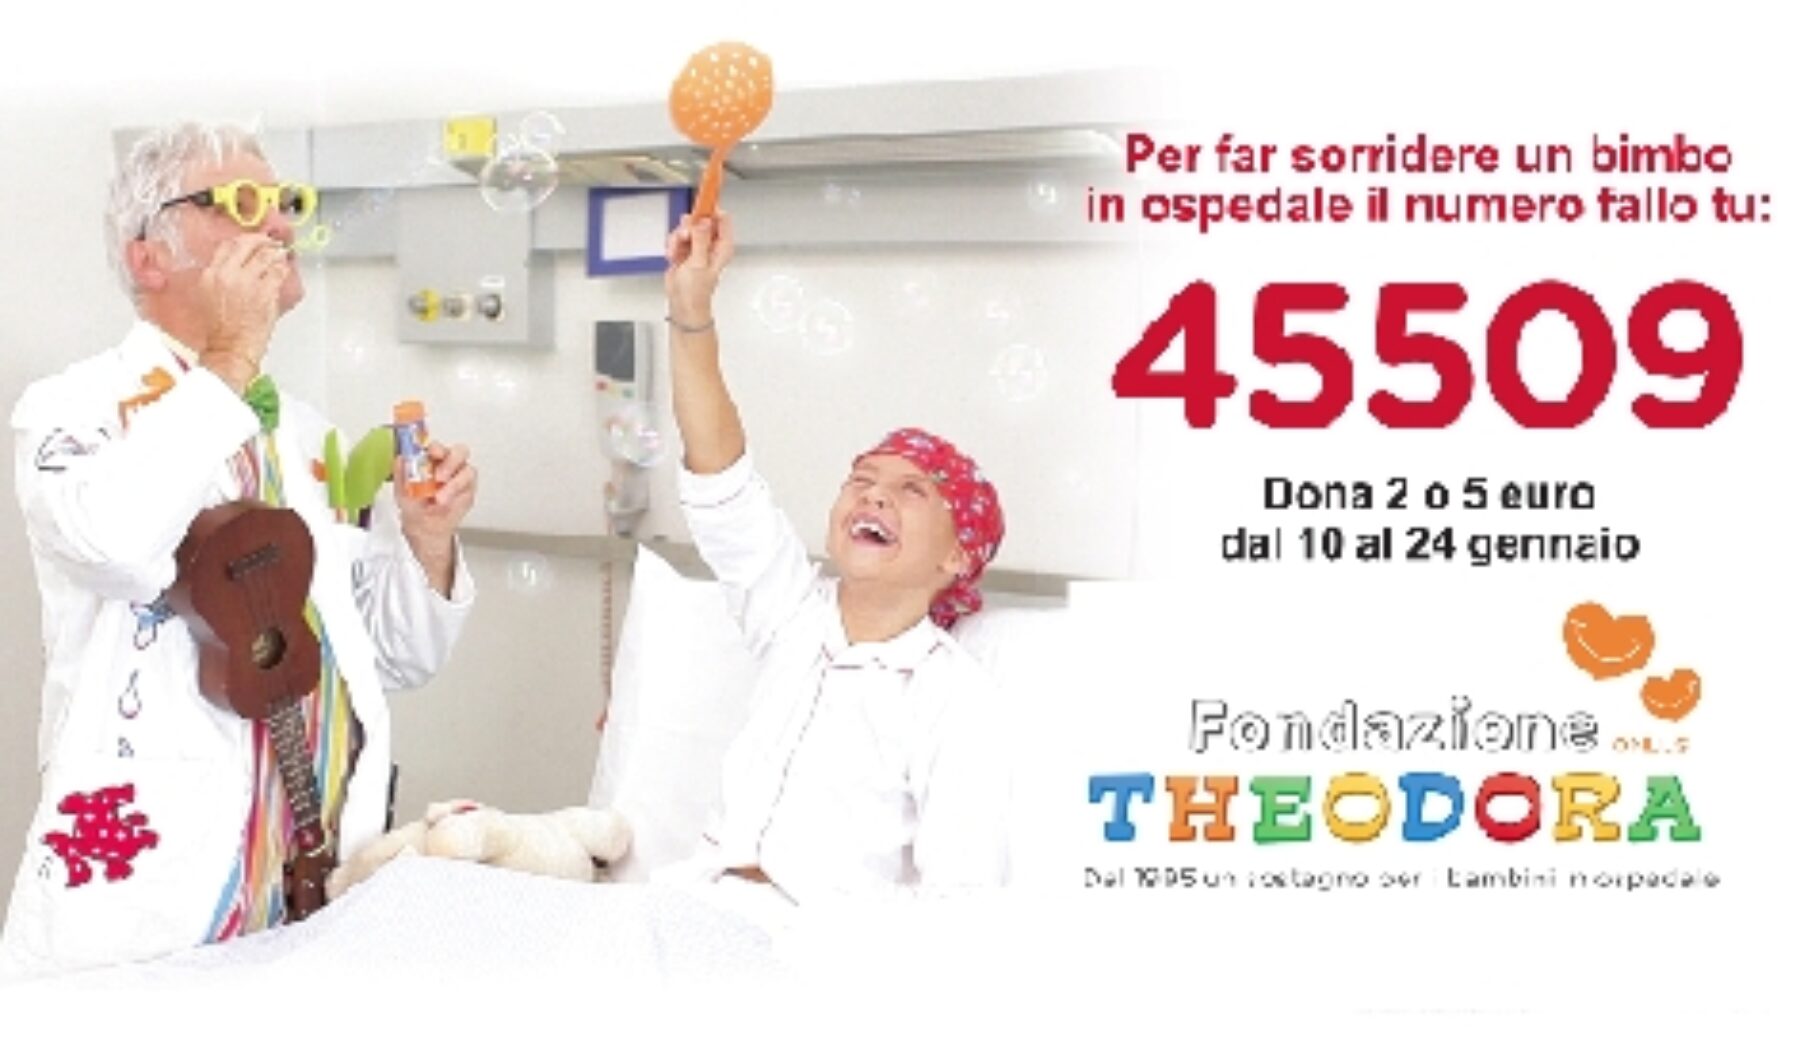 Un sorriso per i bambini in ospedale – Dal 10 al 24 gennaio 2016 SMS solidale al 45509 – Fondazione Theodora ONLUS